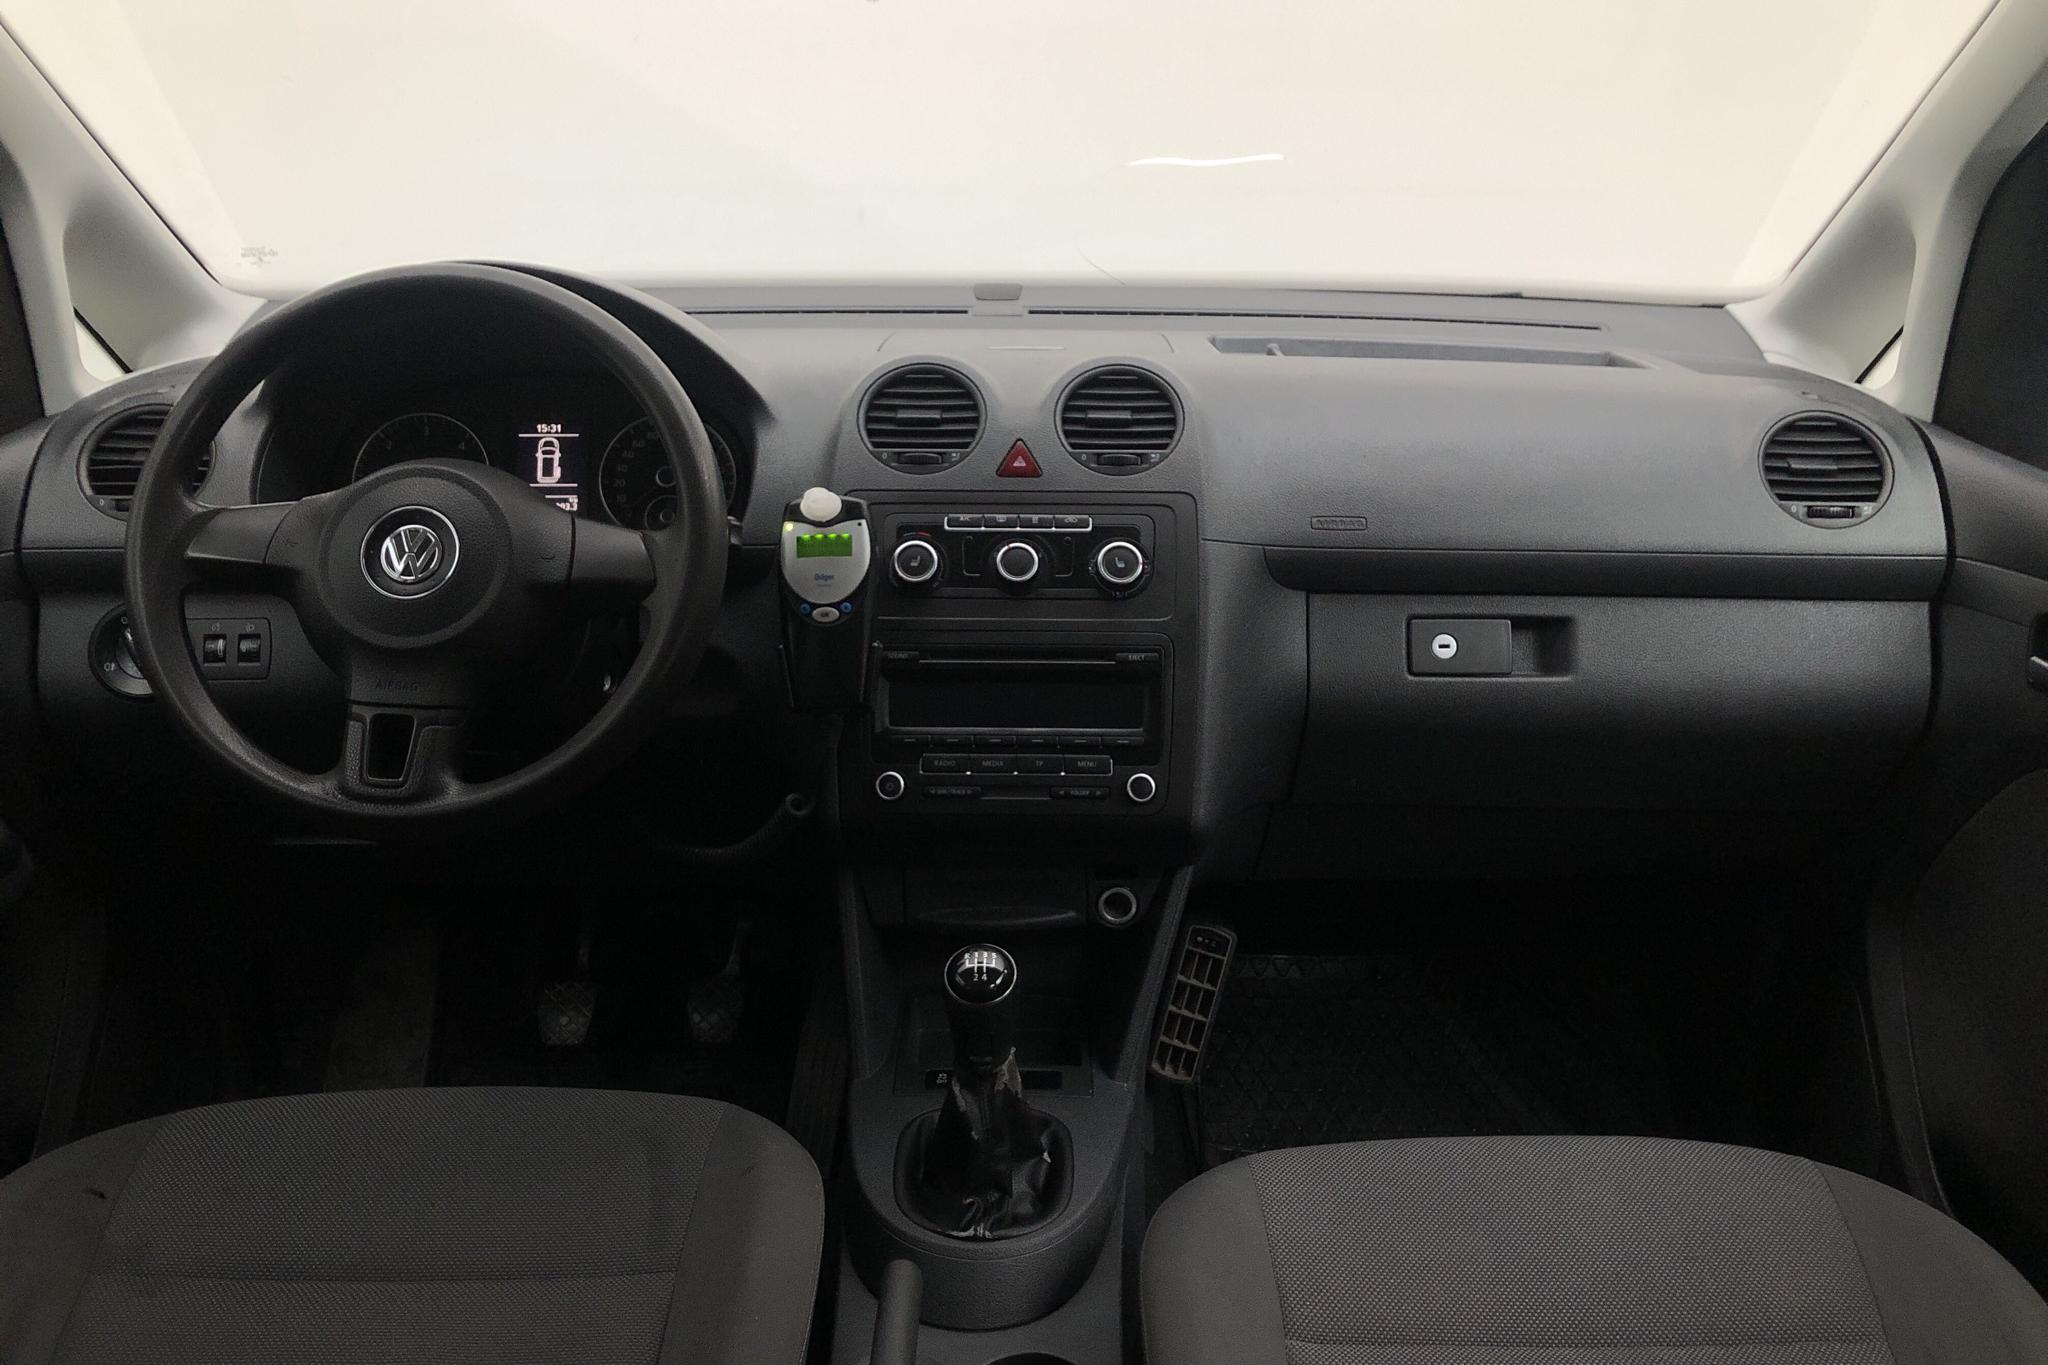 VW Caddy MPV Maxi 1.6 TDI (102hk) - 191 330 km - Manual - white - 2014